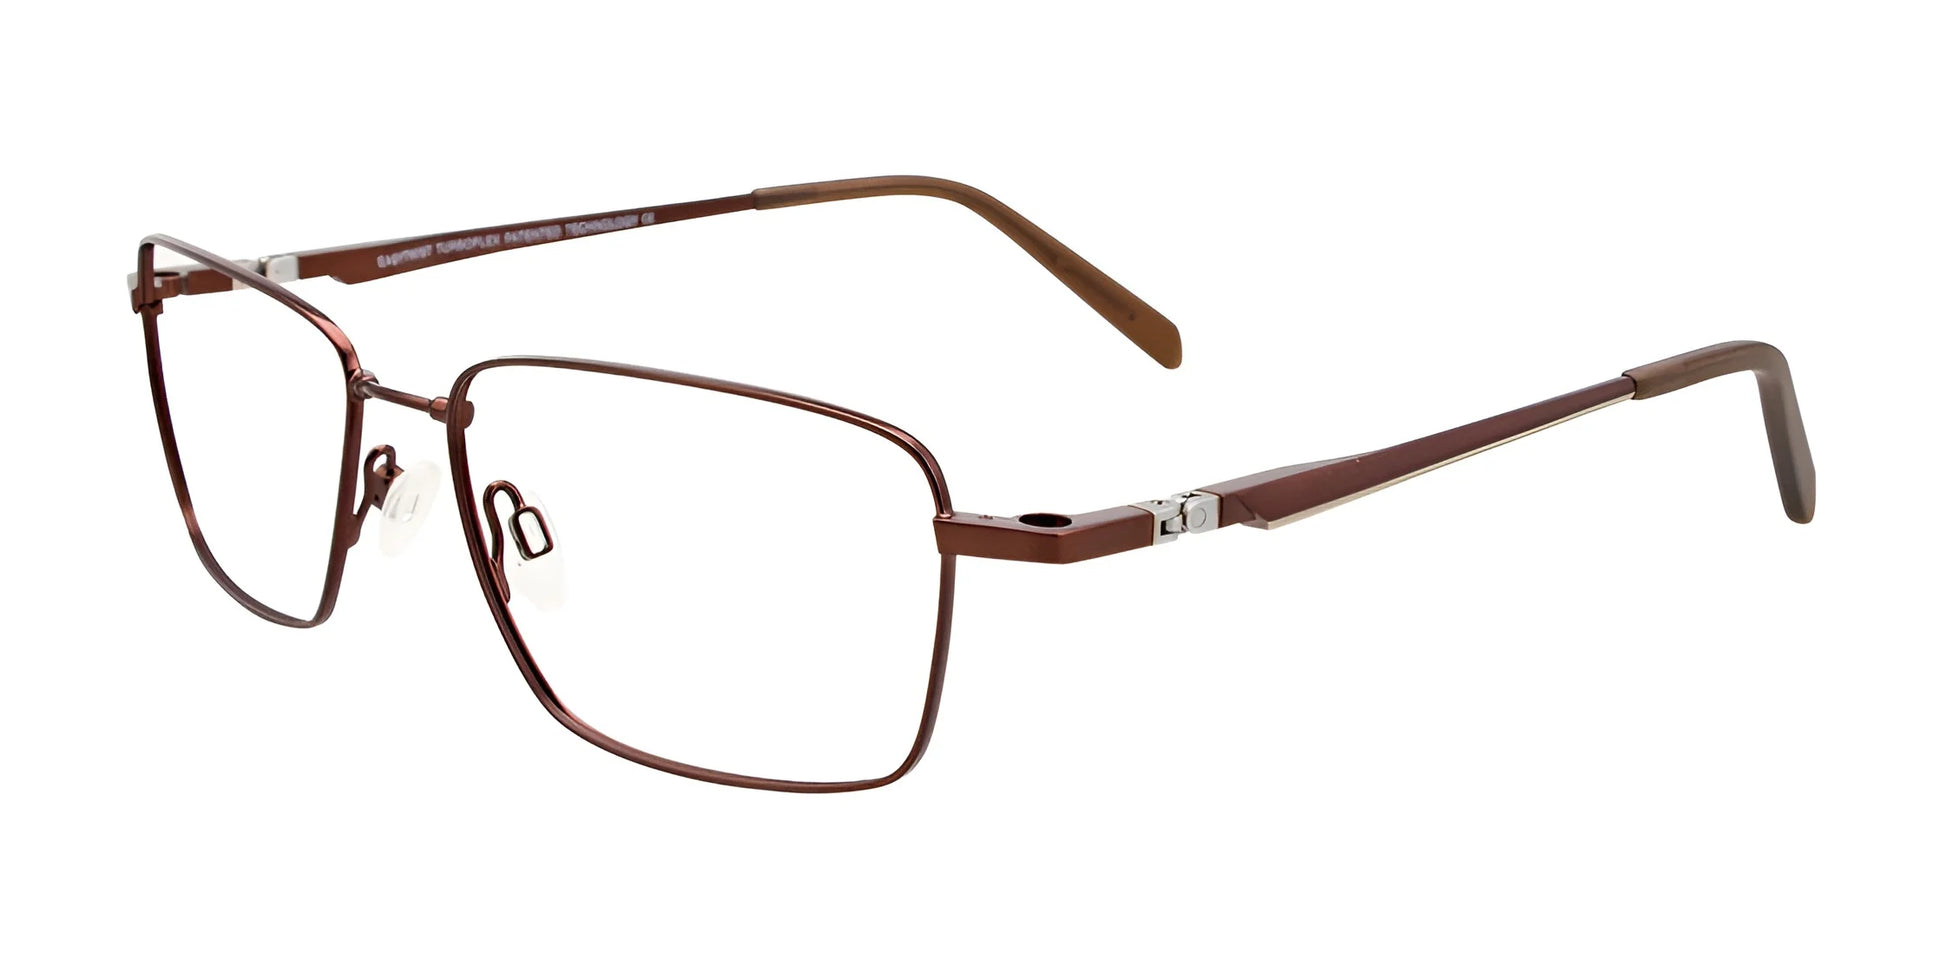 Clip & Twist CT257 Eyeglasses Satin Dark Brown